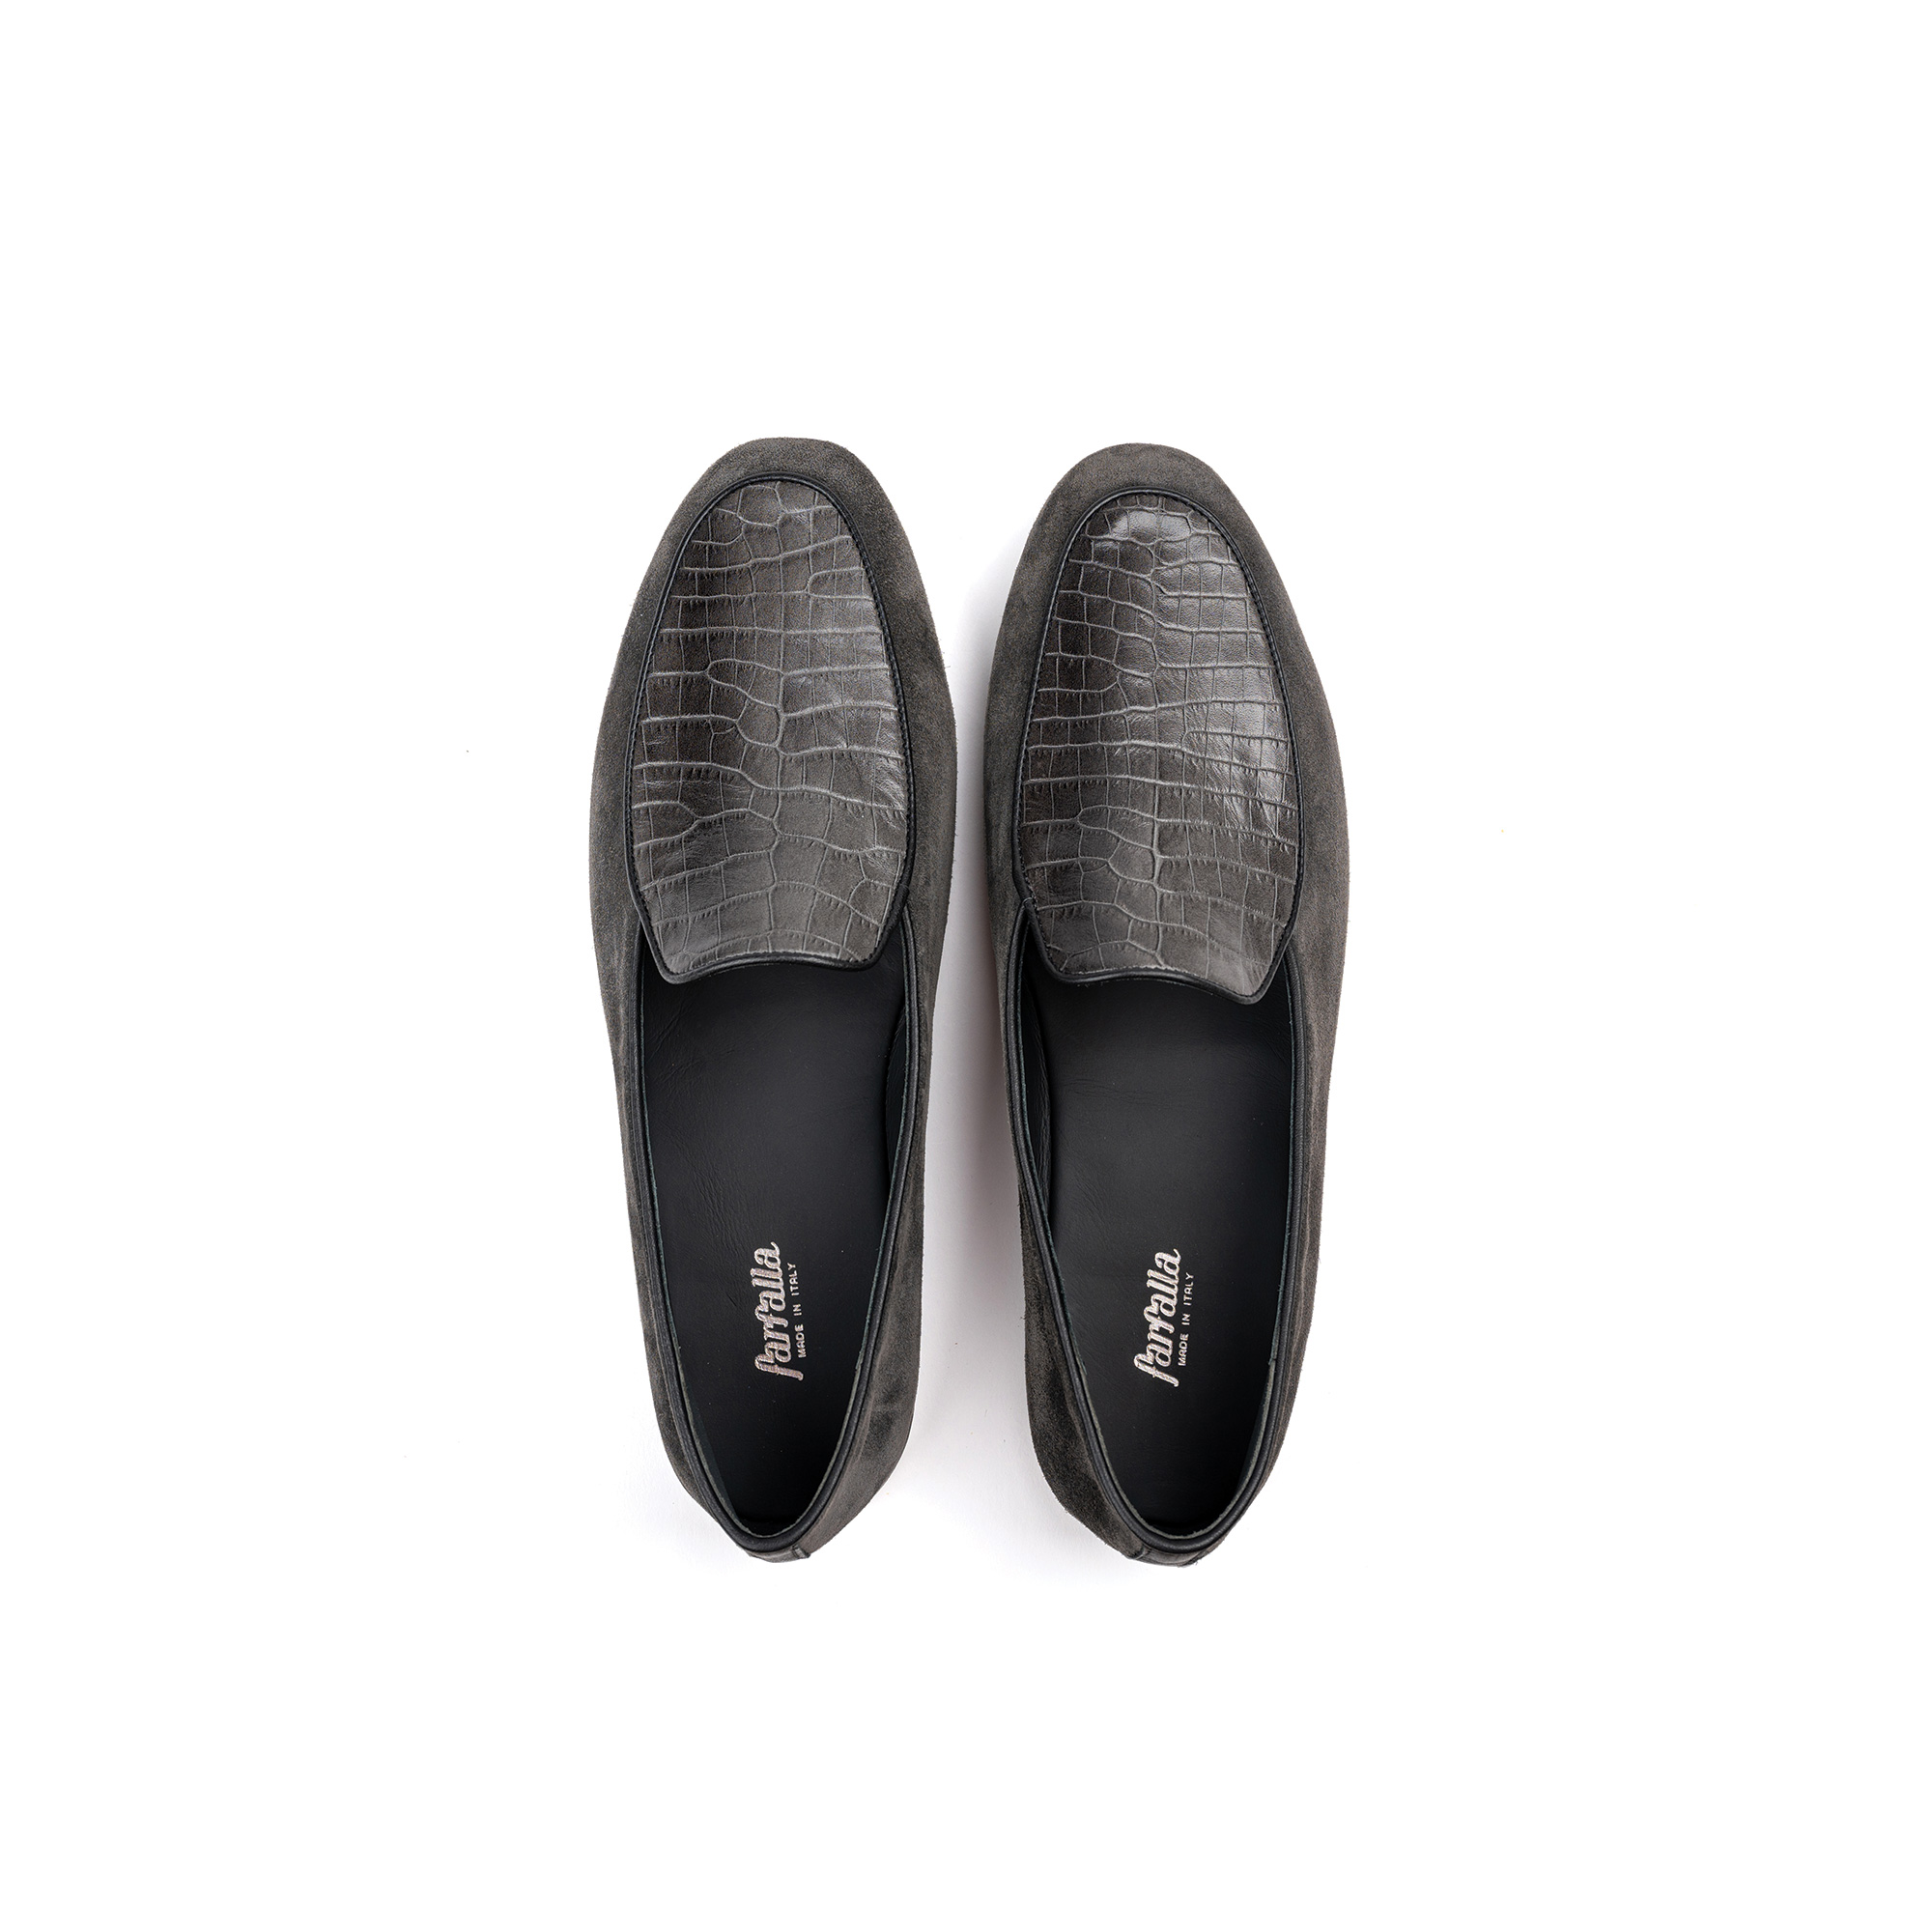 Pantofola interno lusso in velour grigio - Farfalla italian slippers